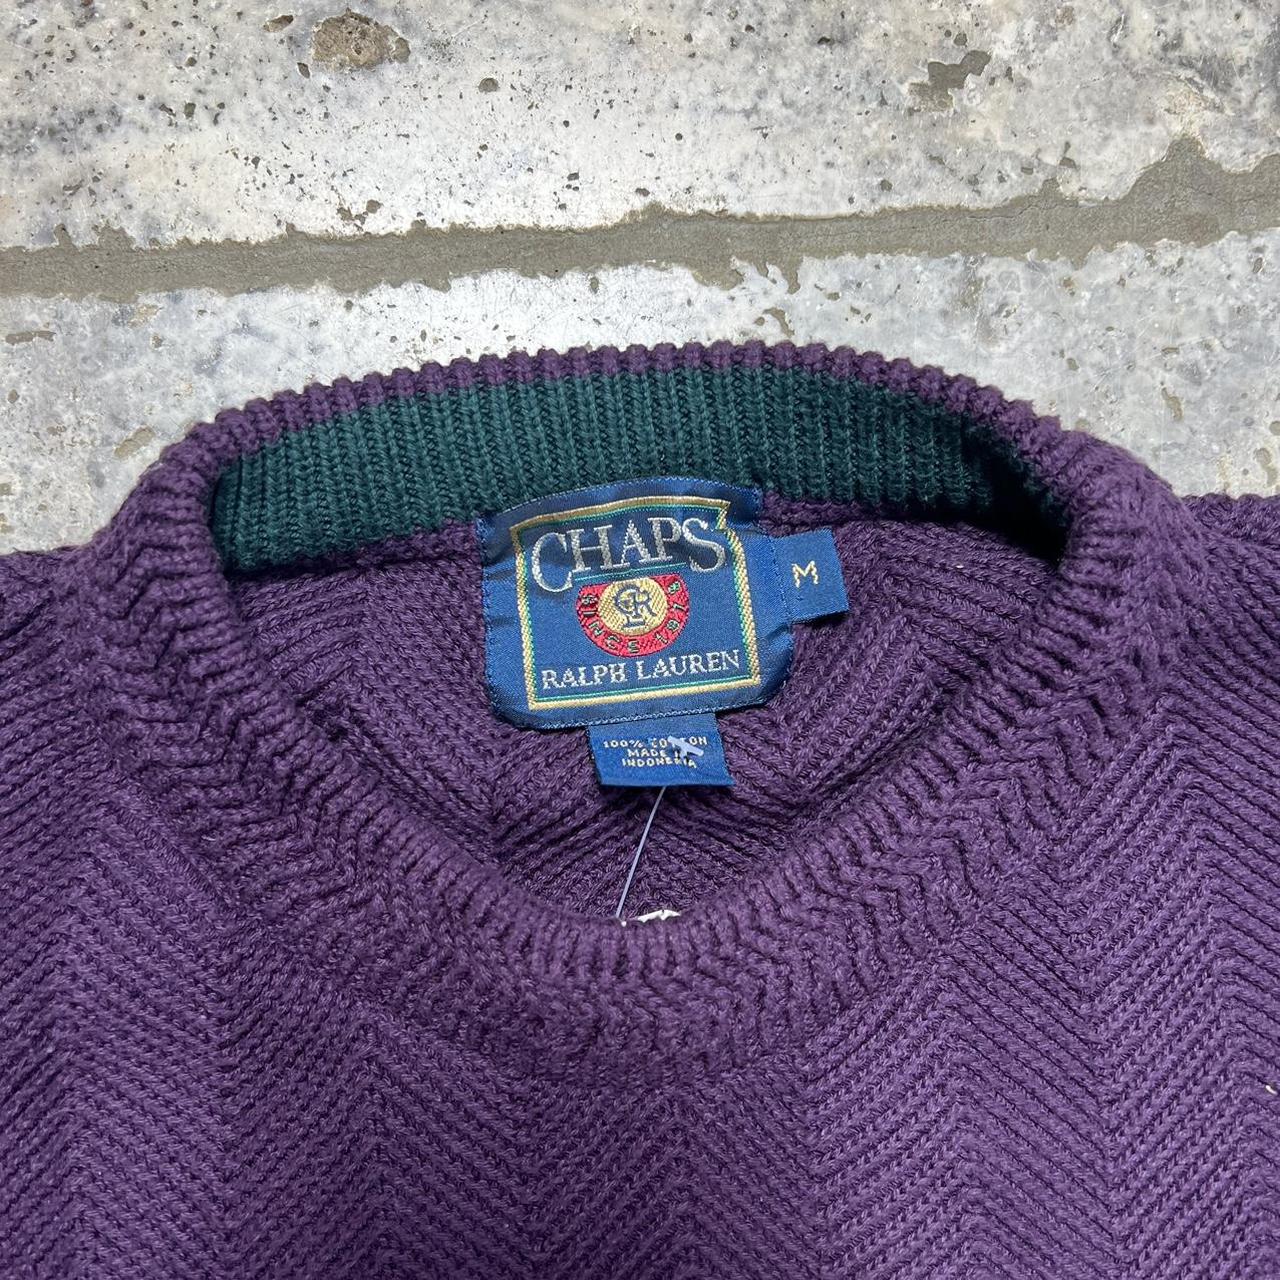 Chaps Ralph Lauren knit jumper medium